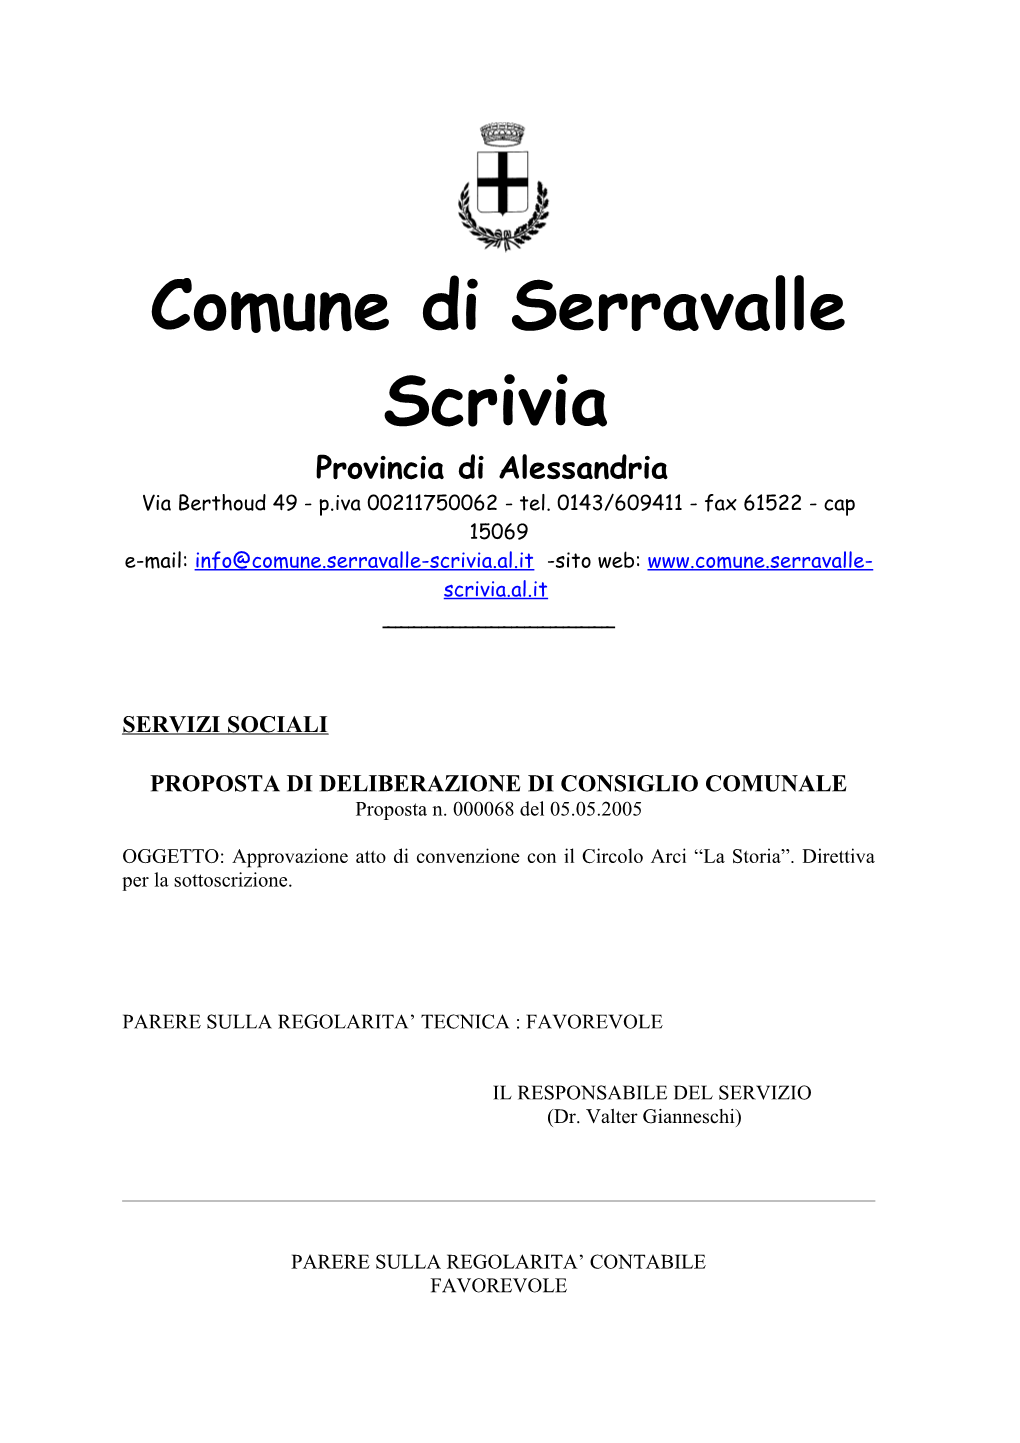 Convenzione Con Il Circolo Arci “La Storia” Di Serravalle Scrivia